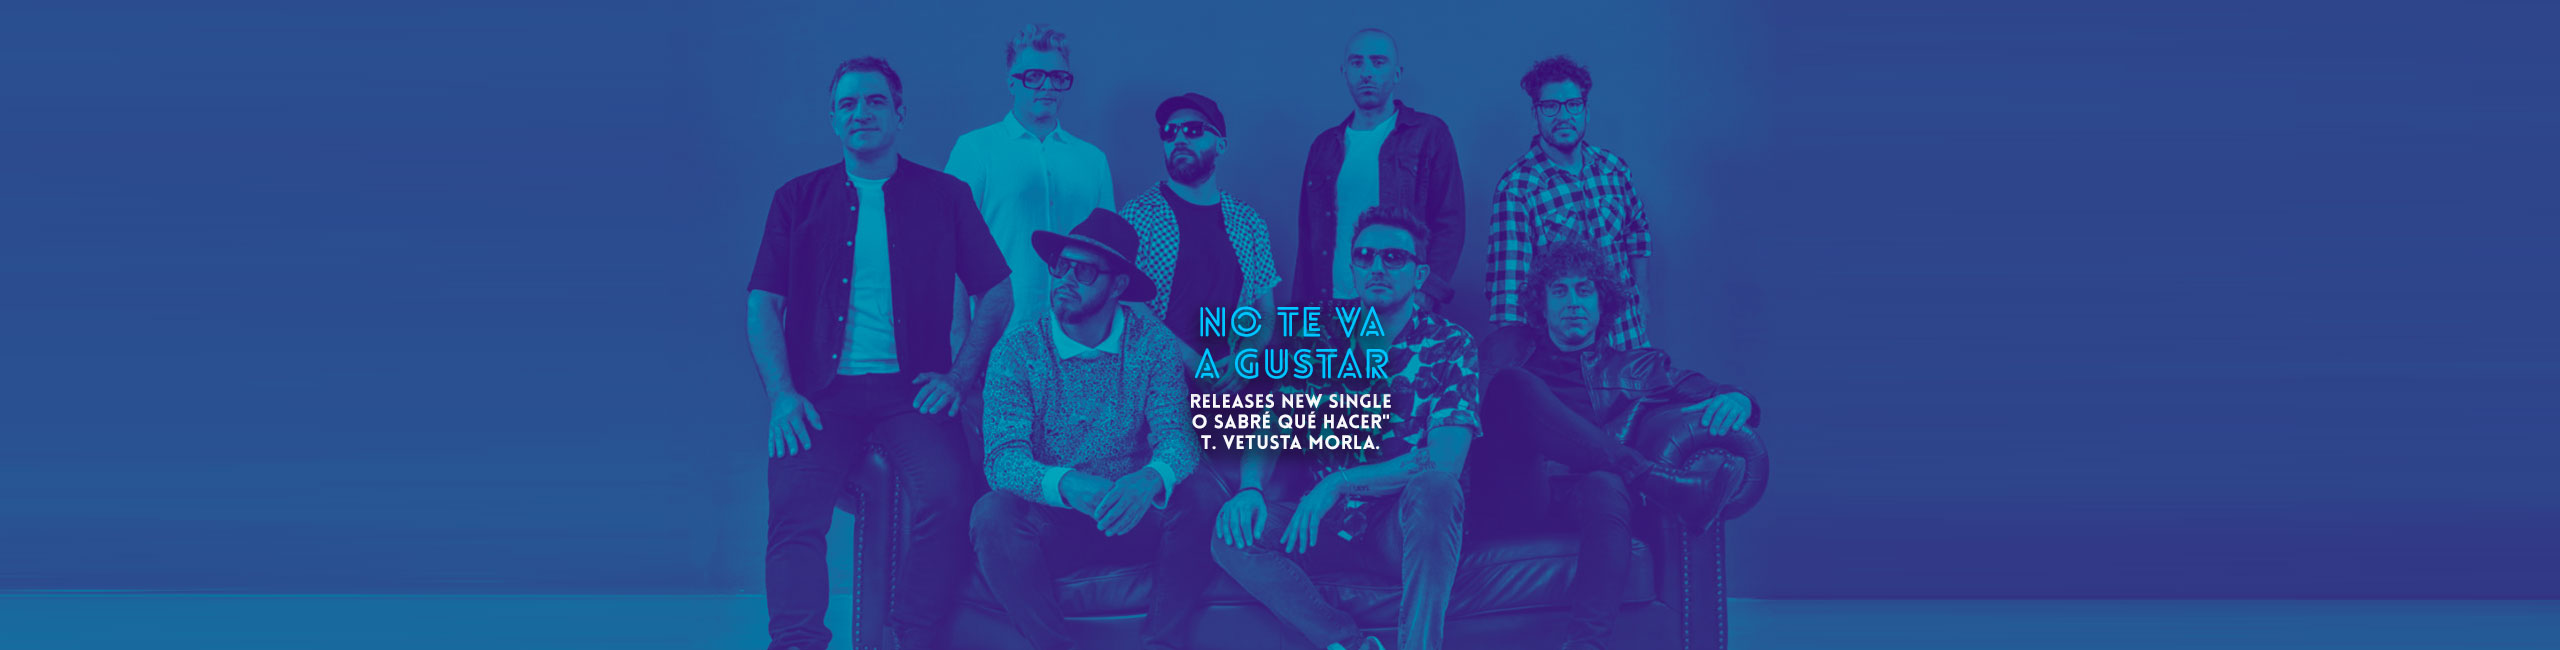 No te va a gustar releases new single “Yo Sabré qué Hacer” Ft. Vetusta Morla.